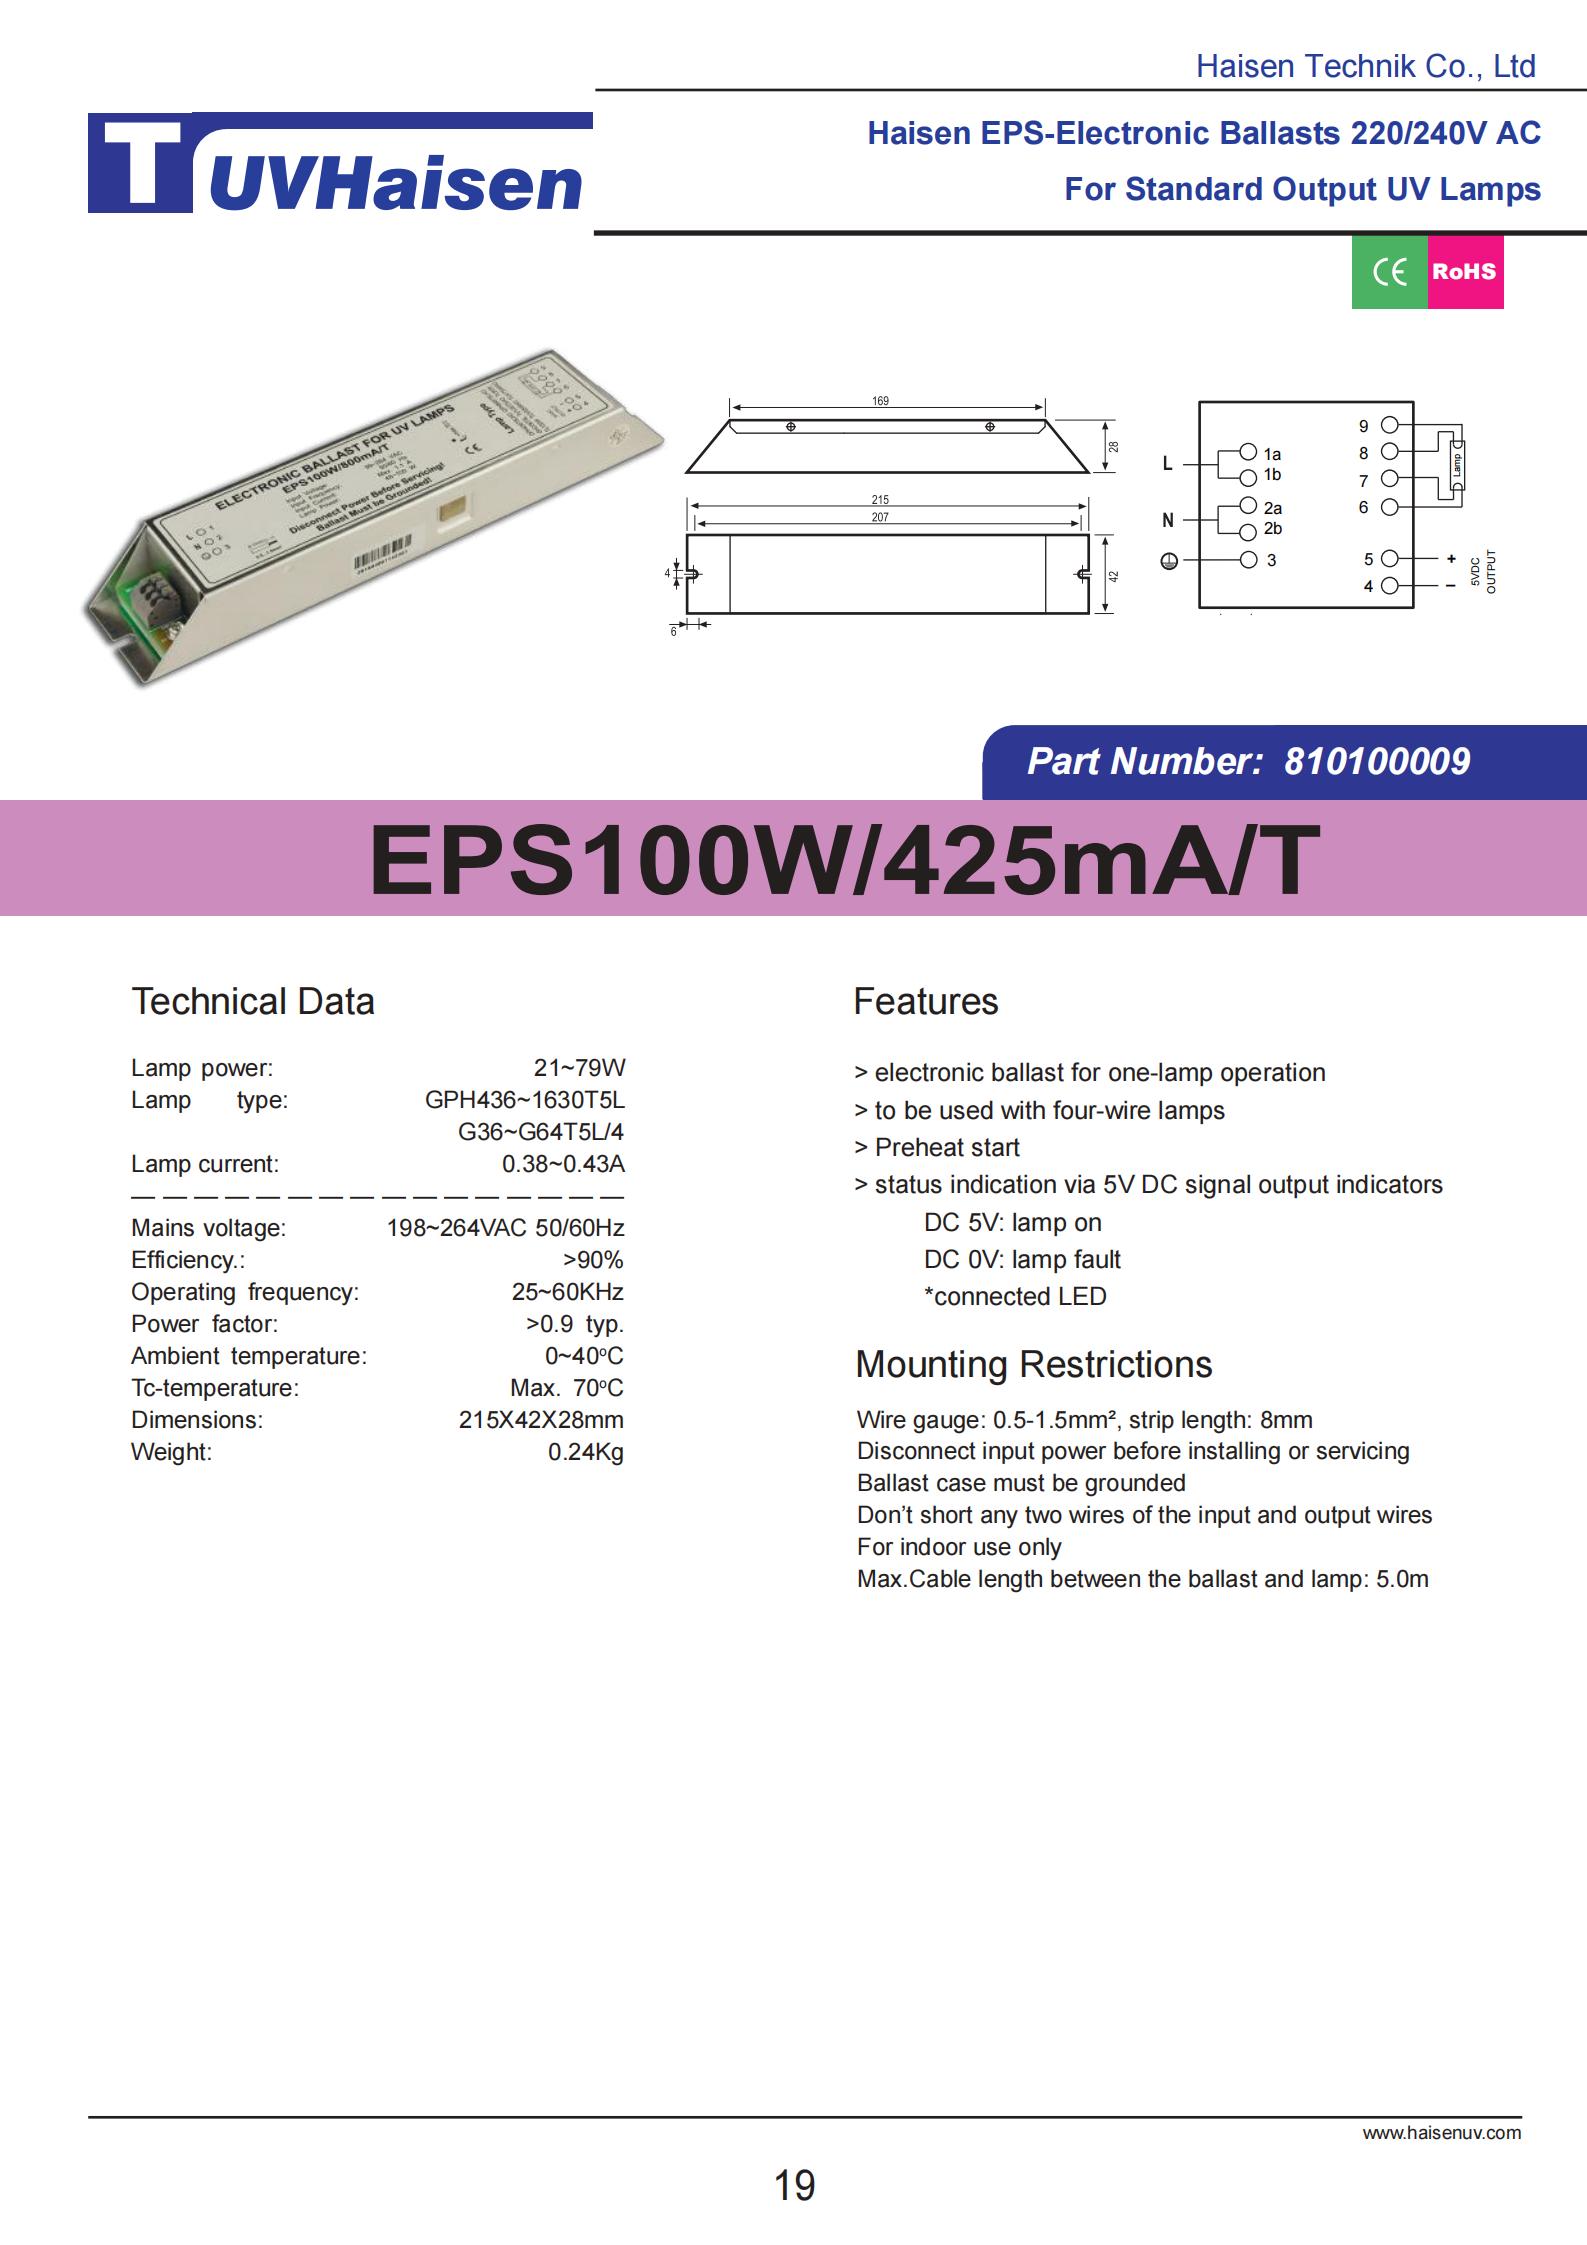  ultravoilet ballast EPS100W/425mA/T FOR UV LIGHTS